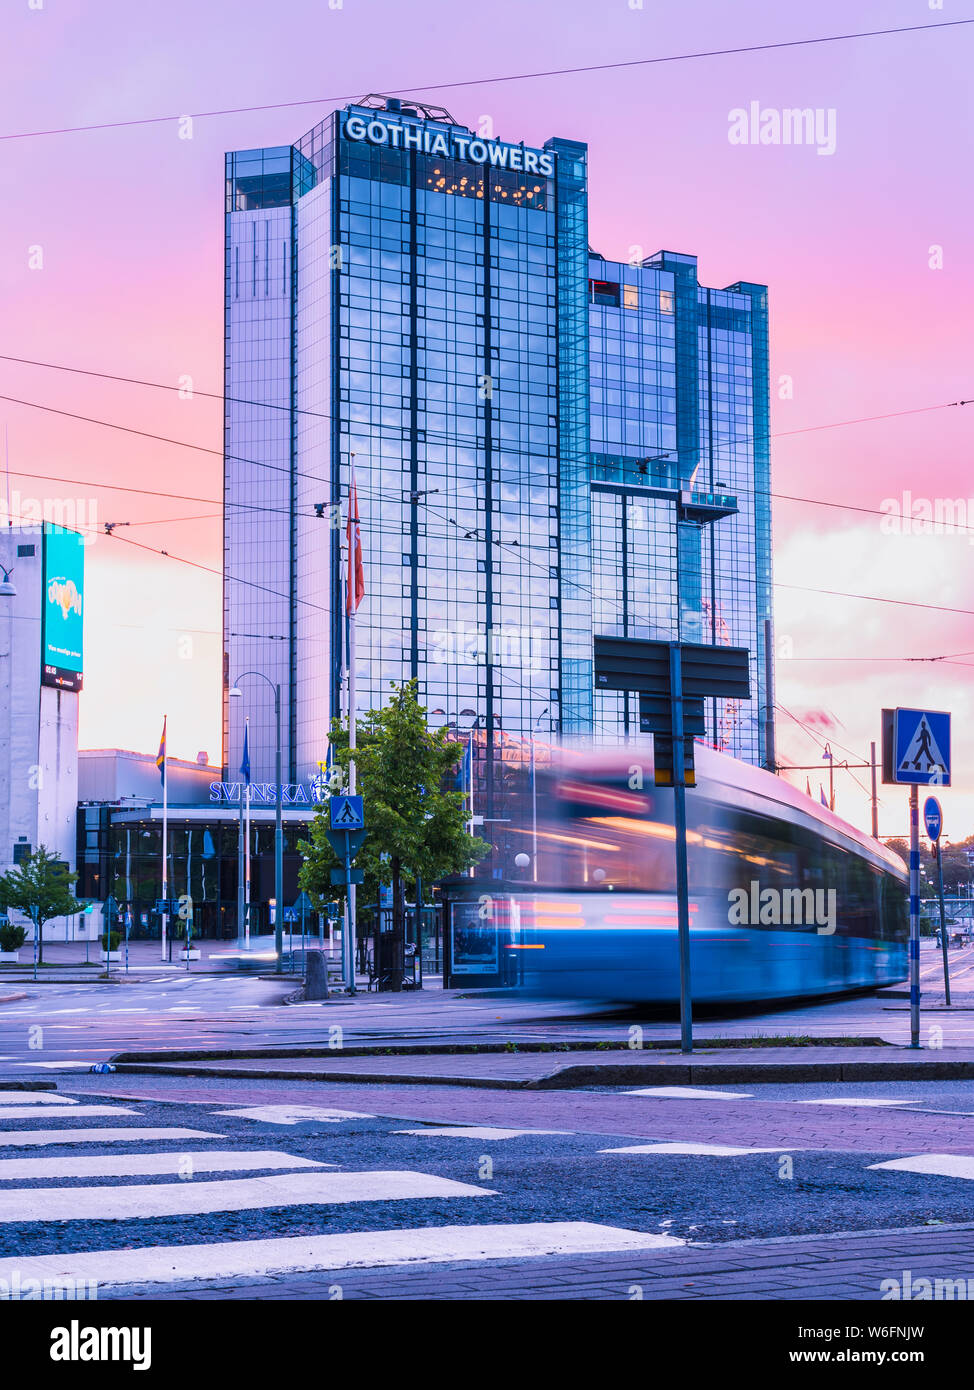 13/08-17, Goteborg, Suecia. El primer tranvía del día está pasando en la concurrida calle de korsvägen normalmente. El cielo púrpura se refleja en el cristal. Foto de stock